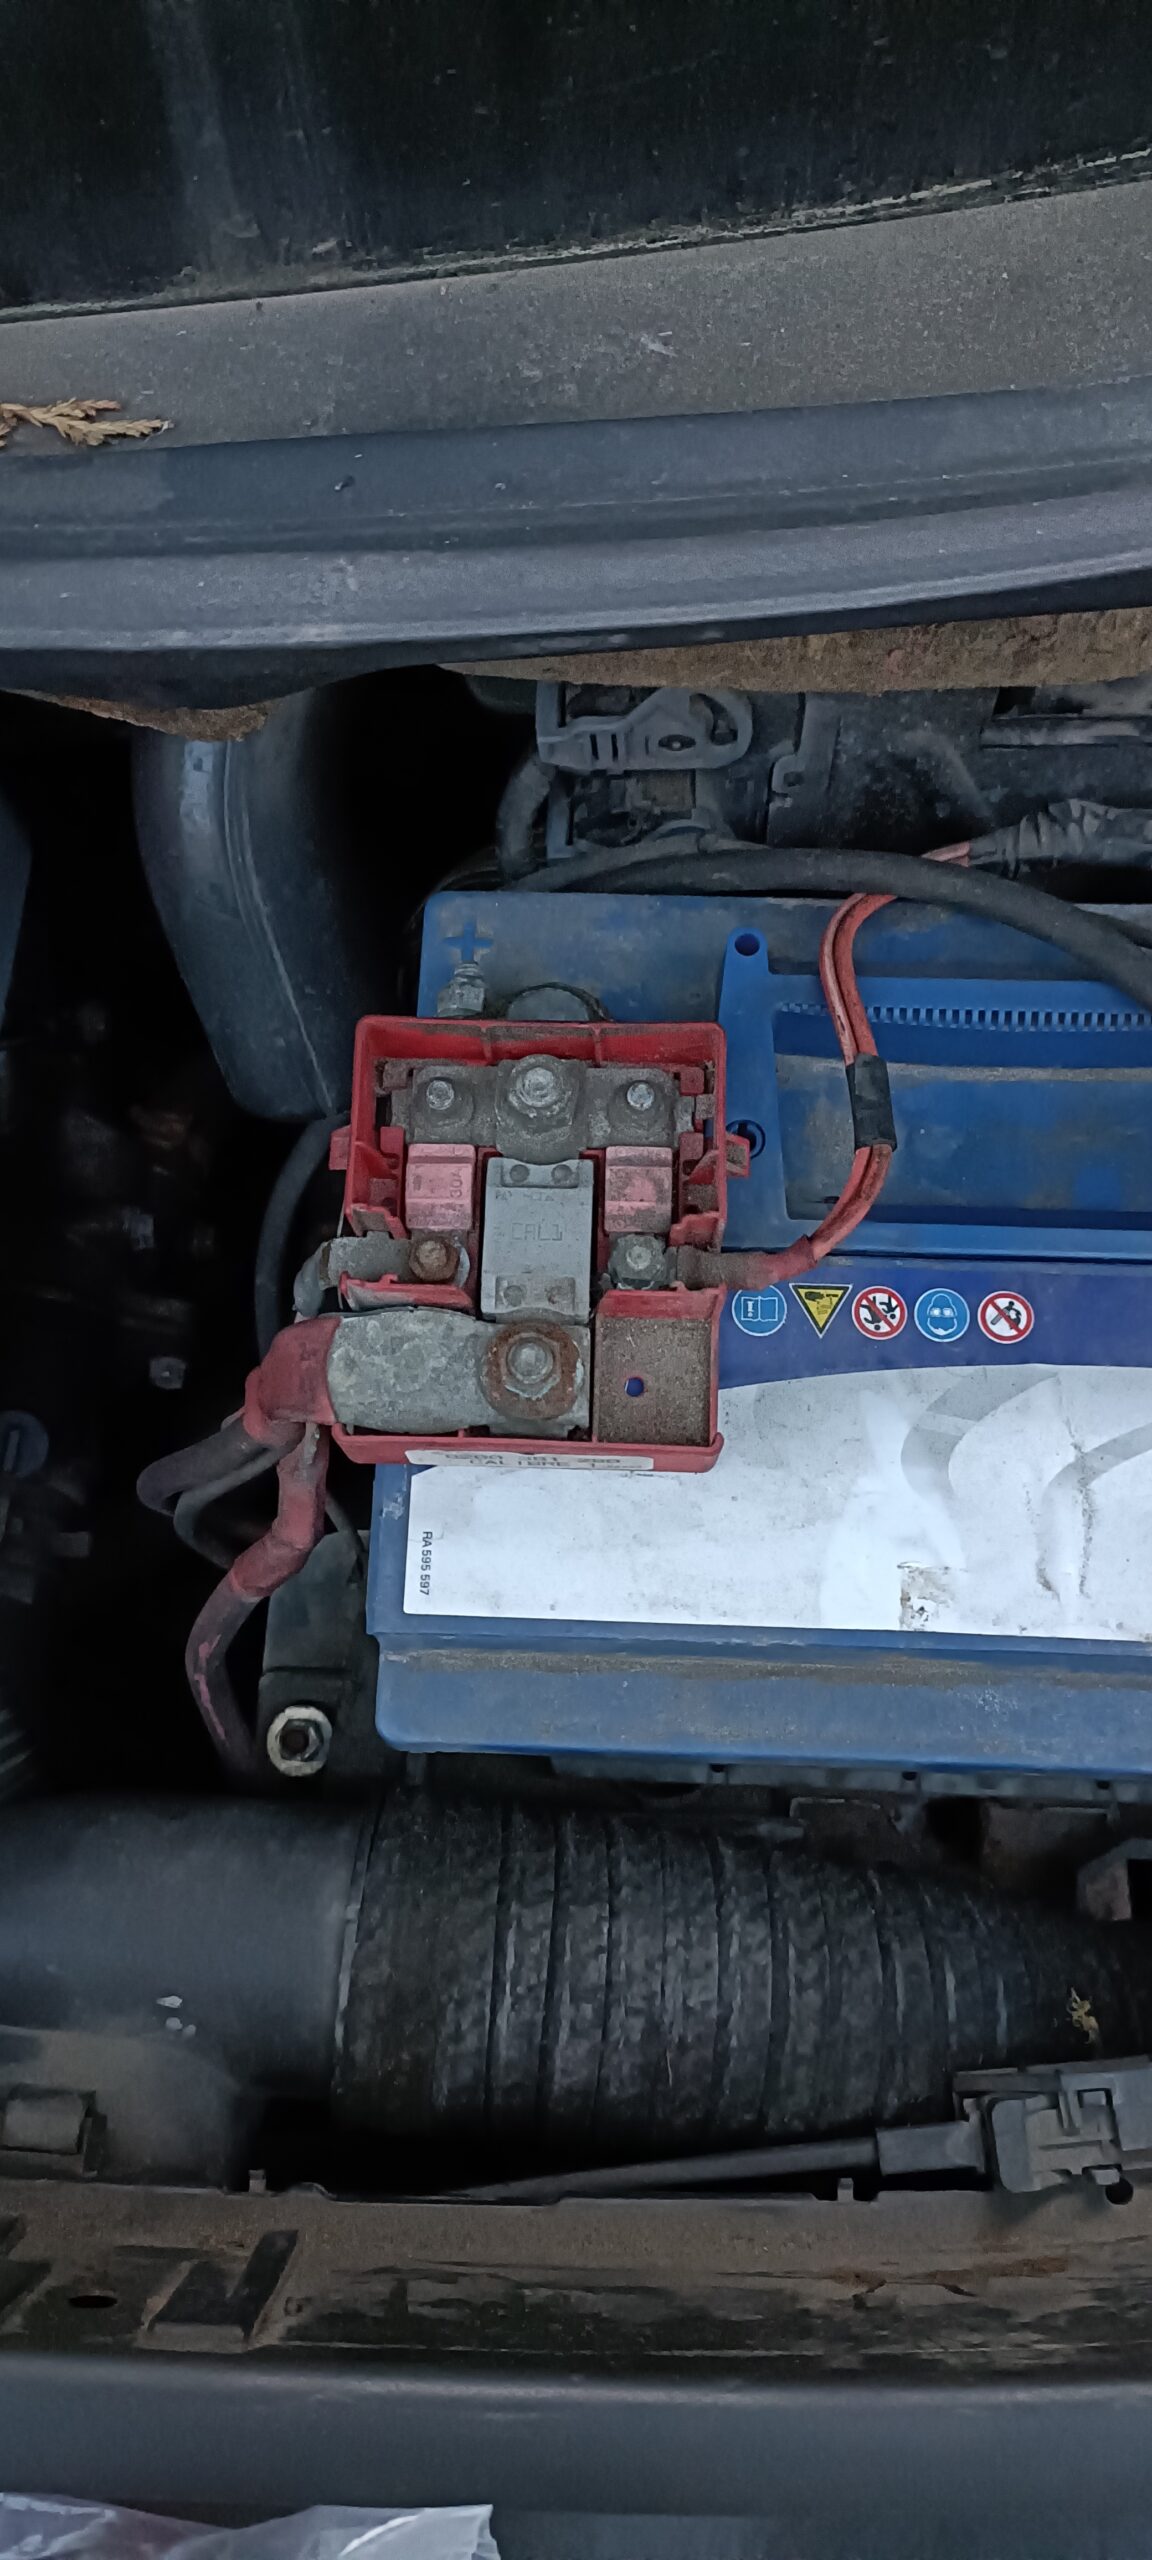 Batteriepolabdeckung Renault Scenic II - Warum verlegen Werkstätten ständig  Dinge? - Das Autotagebuch